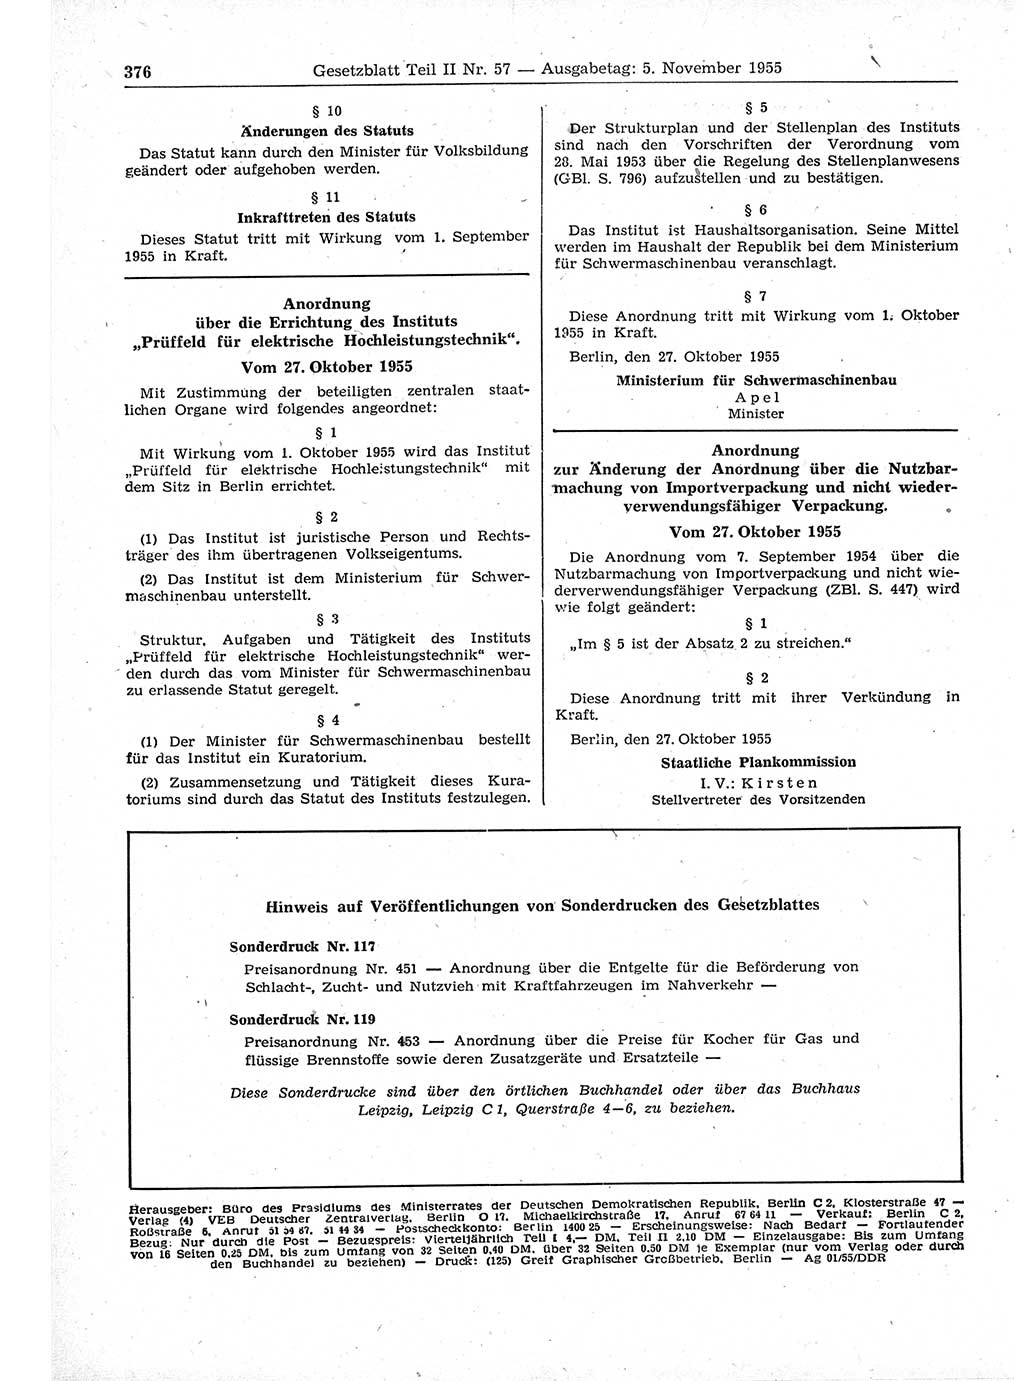 Gesetzblatt (GBl.) der Deutschen Demokratischen Republik (DDR) Teil ⅠⅠ 1955, Seite 376 (GBl. DDR ⅠⅠ 1955, S. 376)